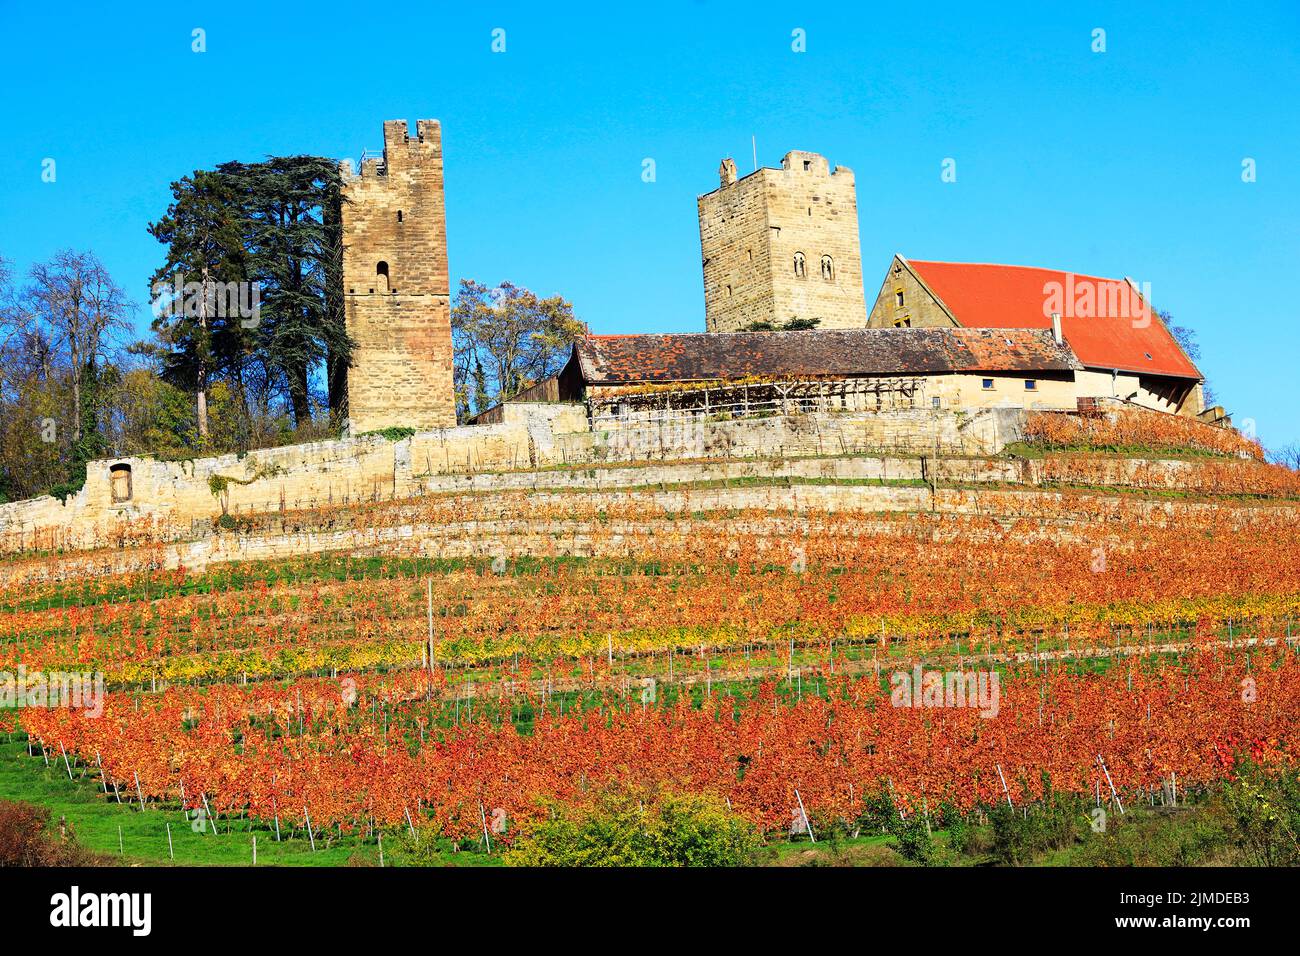 The Castle Neipperg near Heilbronn, Germany, Europe Stock Photo